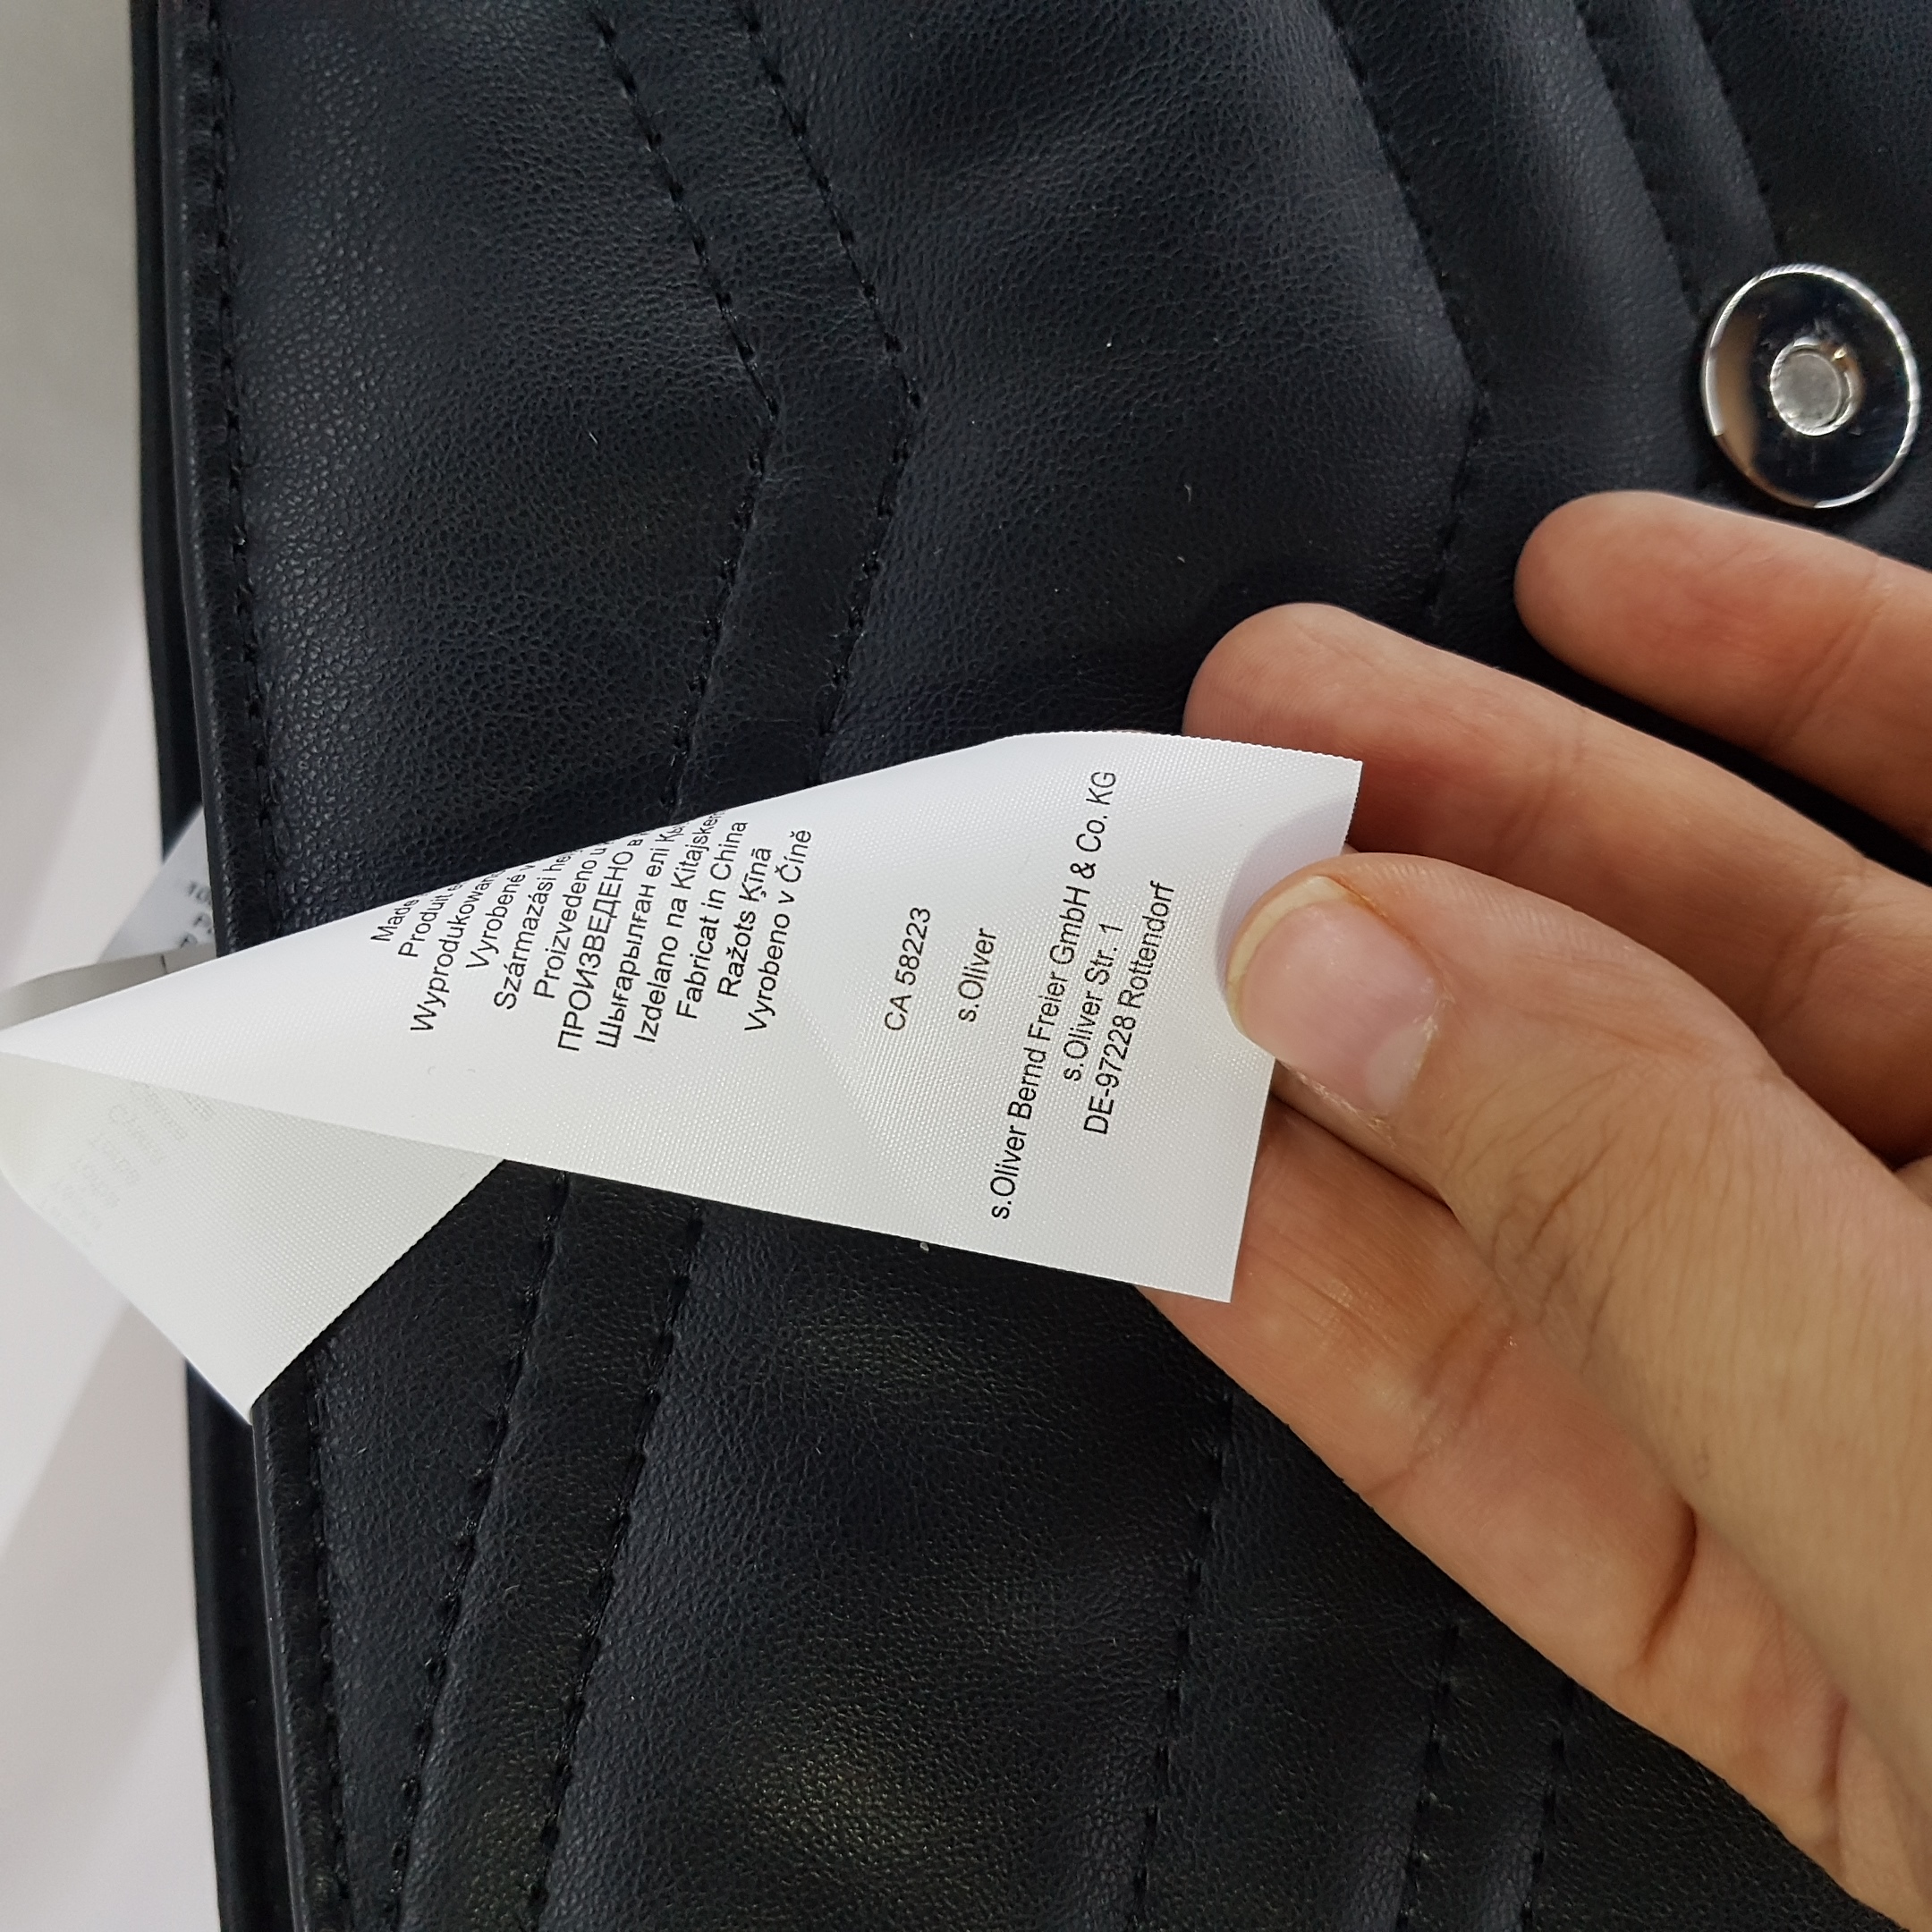 کیف دوشی زنانه اس.اولیور مدل 201.10.2Q4.30.300 -  - 9